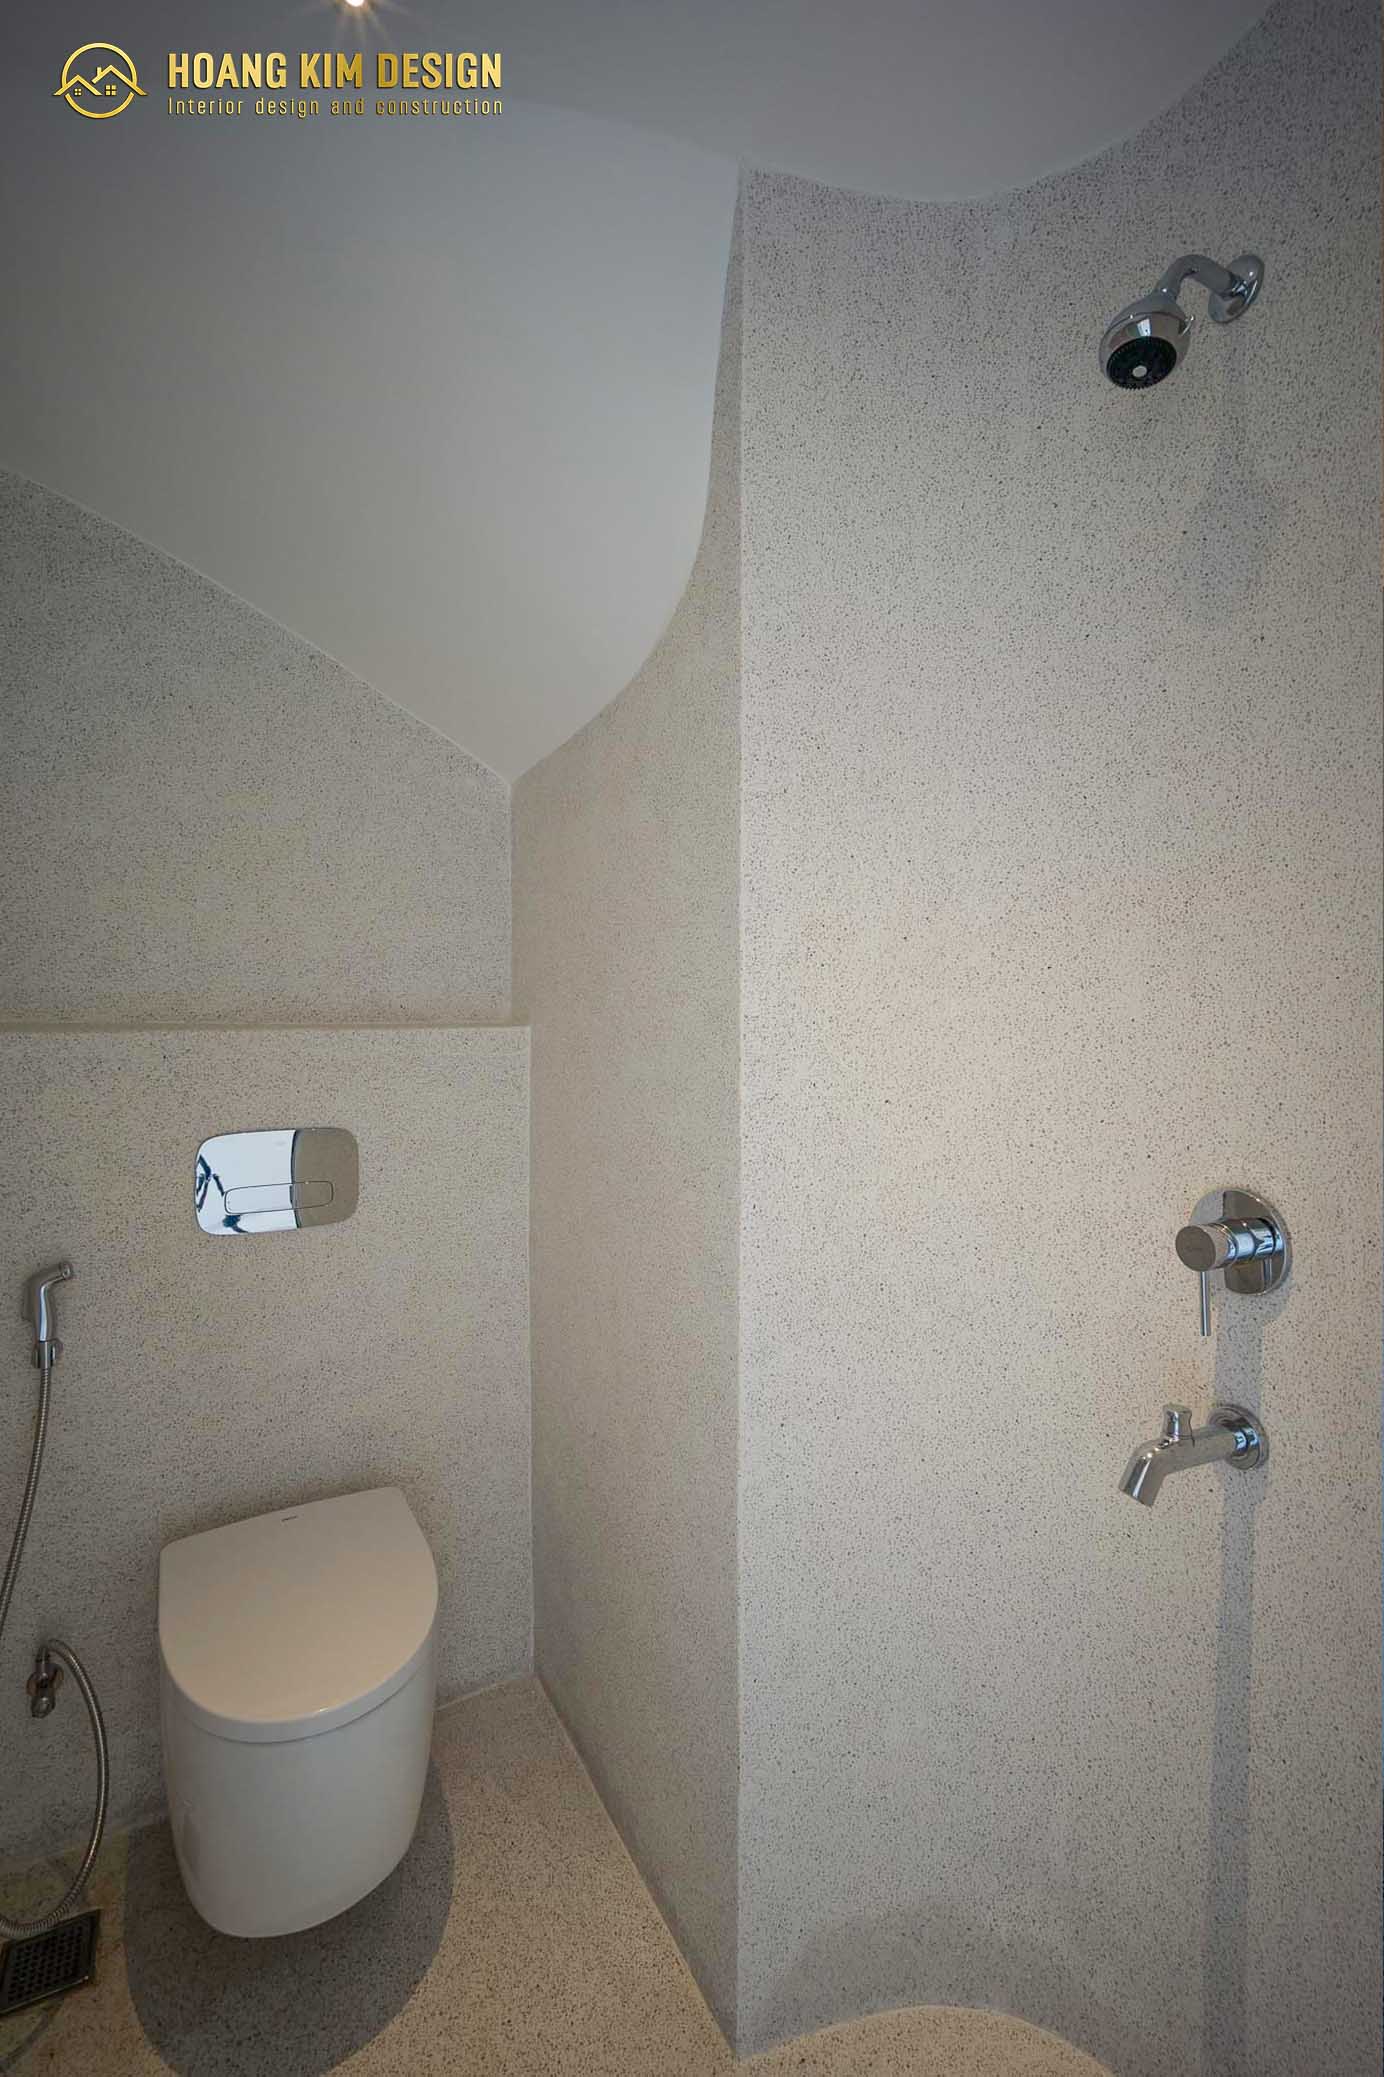 nhà tắm được kết hợp với nhà vệ sinh giúp tiết kiệm tối đa diện tích